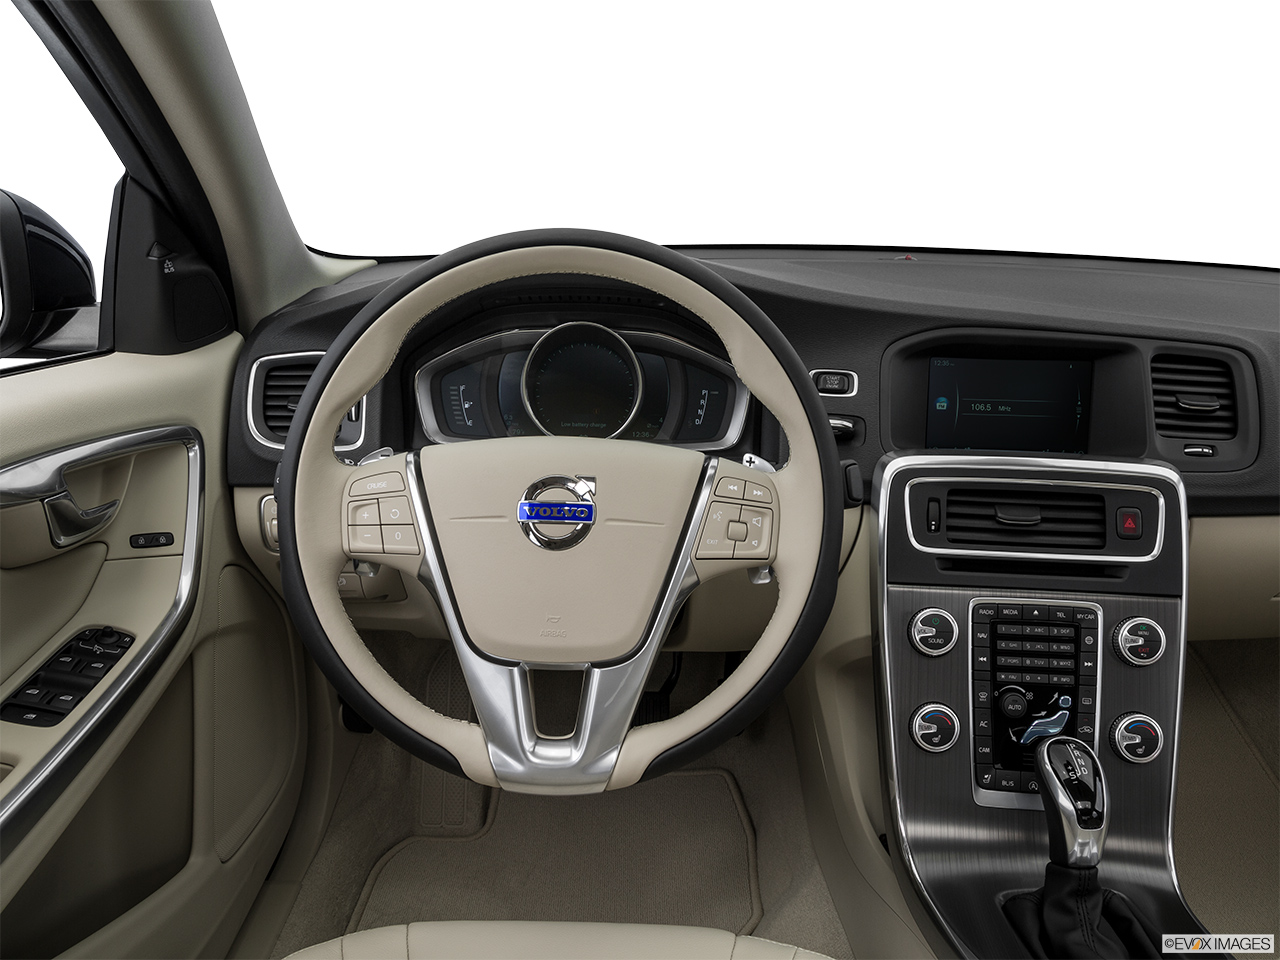 2016 Volvo S60 T5 Drive-E FWD Premier Steering wheel/Center Console. 